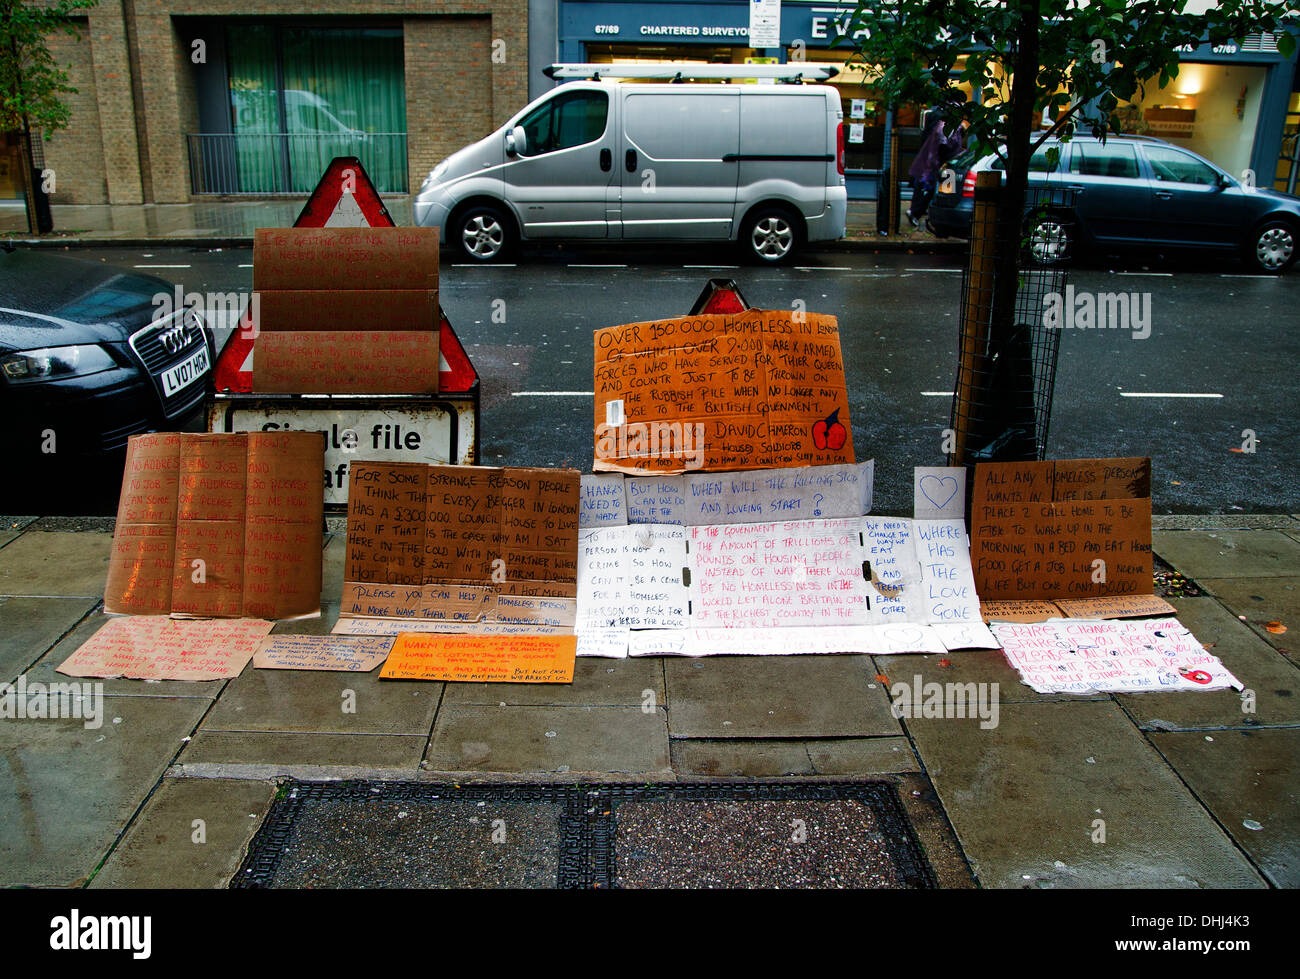 Londres, Royaume-Uni. 11Th Nov, 2013. Appel public pour aider les sans-abri, George Street, London, England, UK Crédit : Keith Erskine/Alamy Live News Banque D'Images